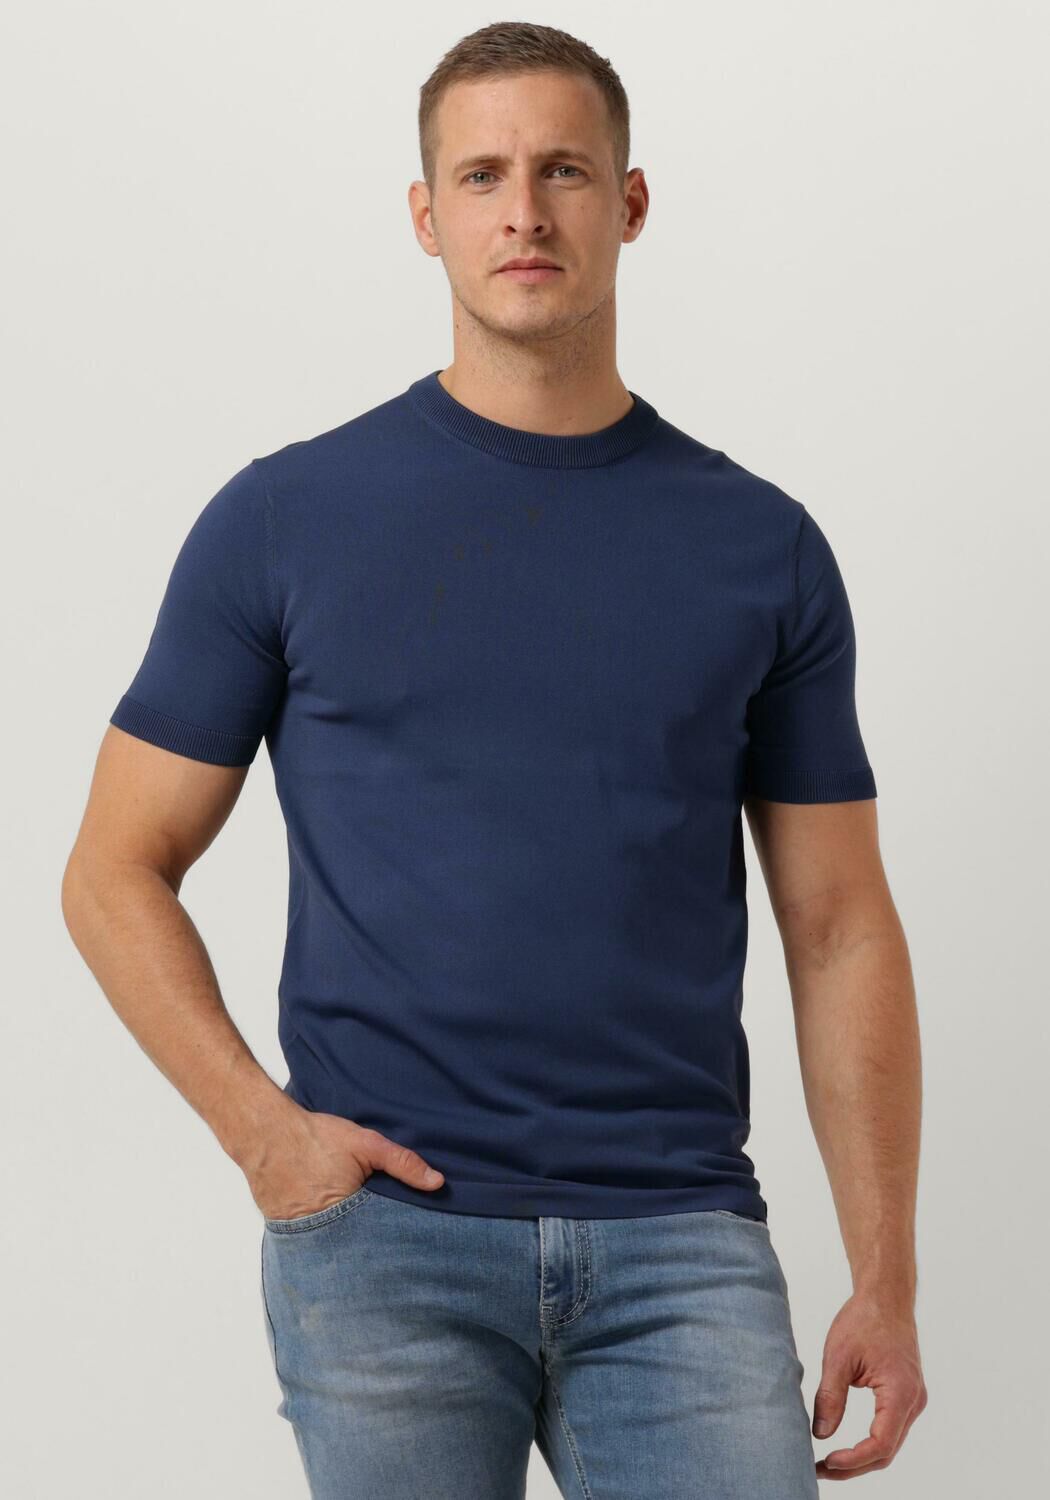 GENTI Heren Polo's & T-shirts K9126-1260 Blauw